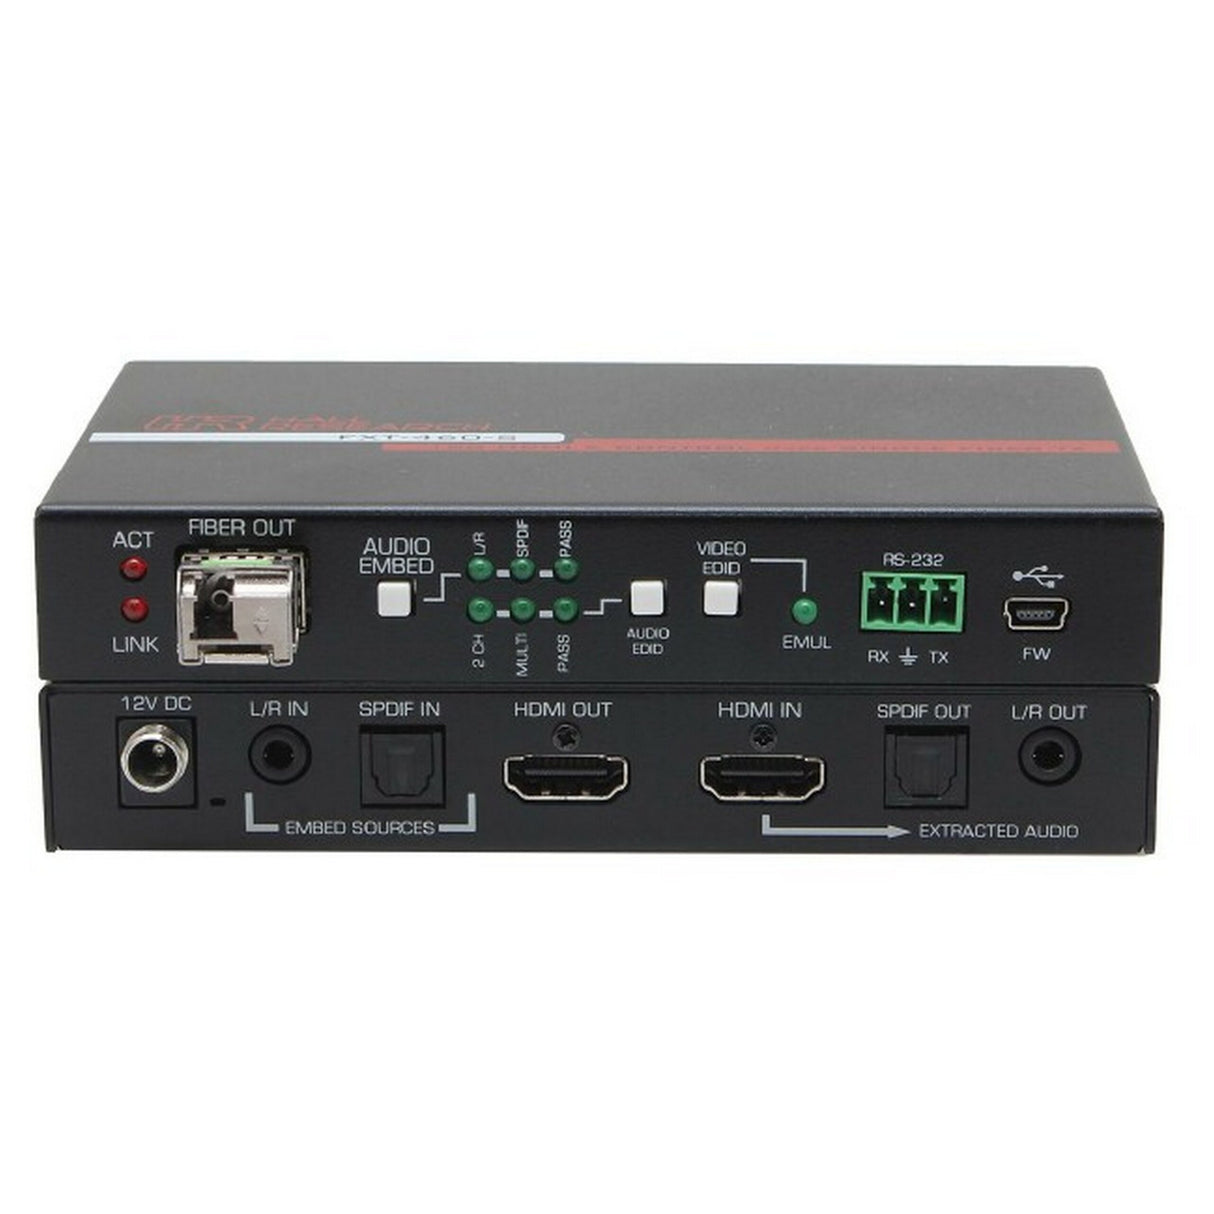 Hall Technologies FXT-460-S 4K HDMI 2.0 Fiber Optic Extender, Sender